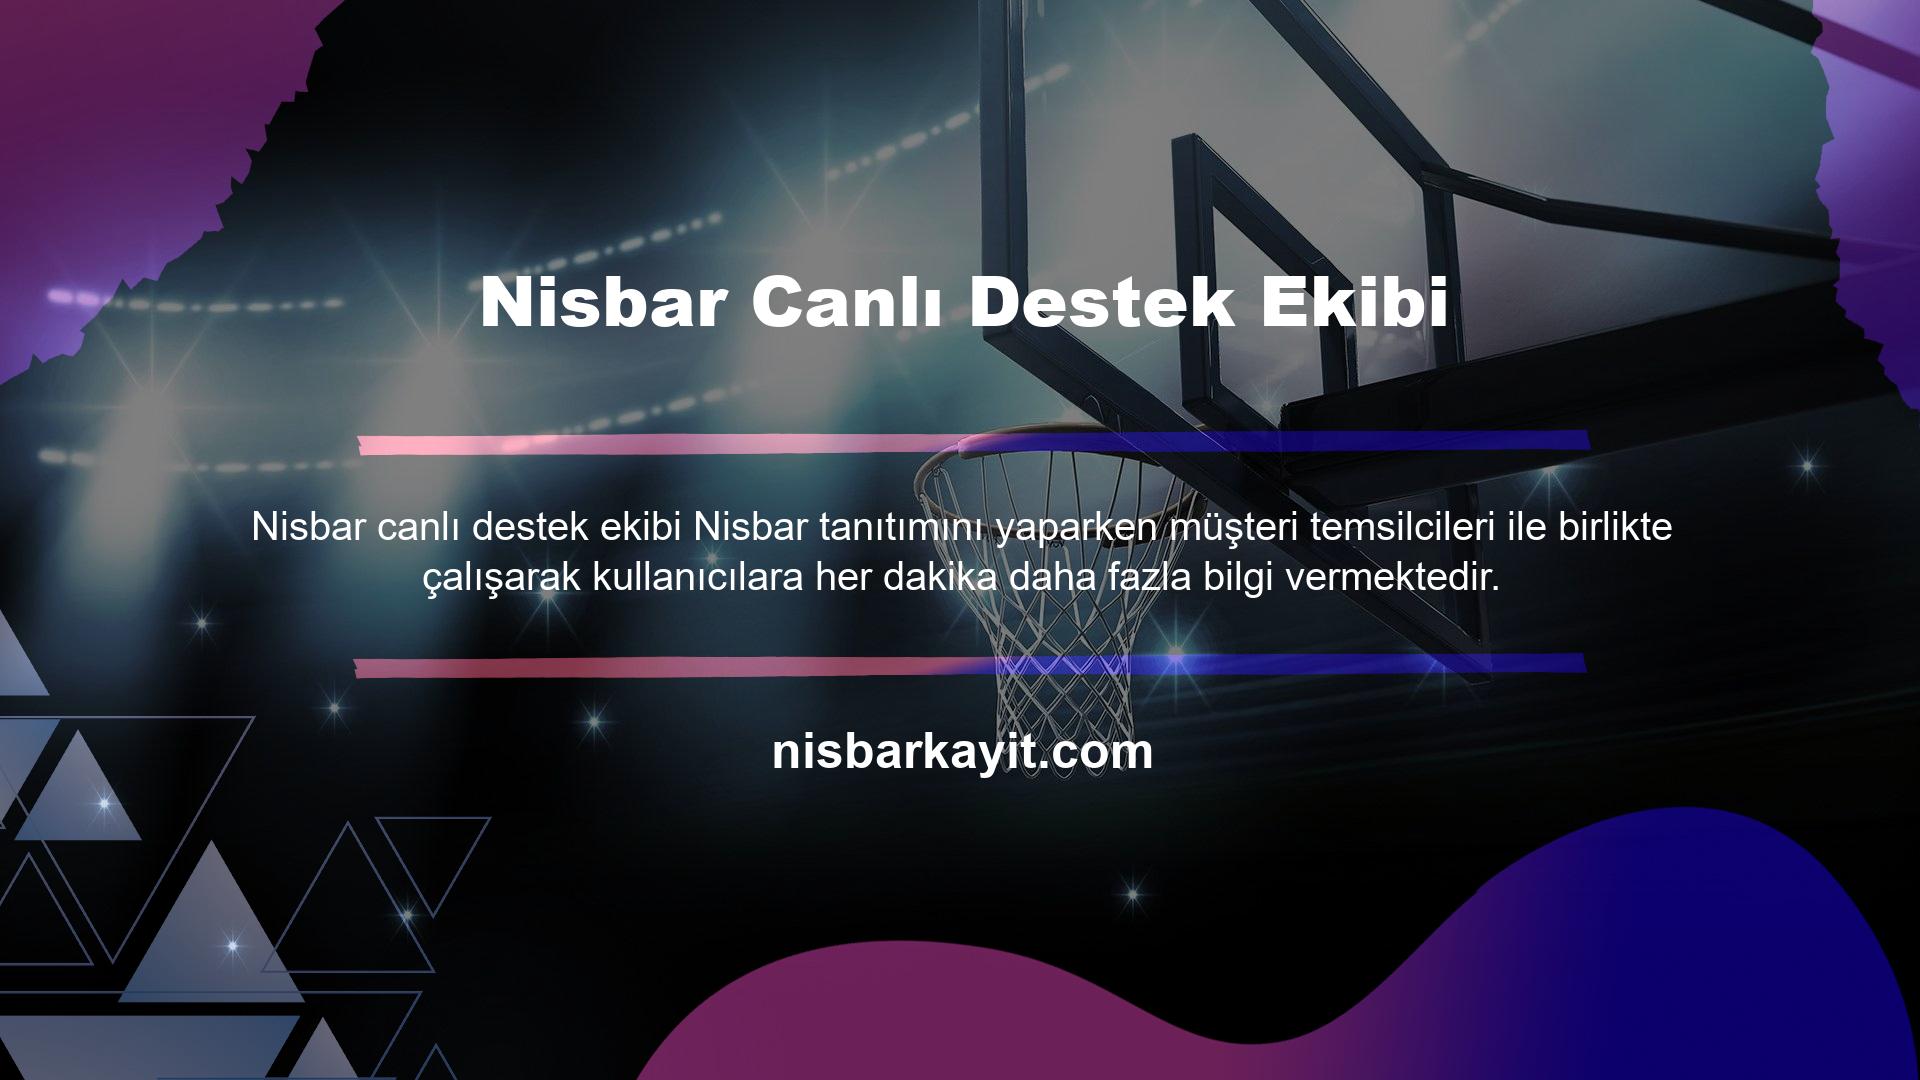 Nisbar canlı destek ekibi alanında profesyonel kişilerden oluşmaktadır ve 7/24 destek alabilirsiniz